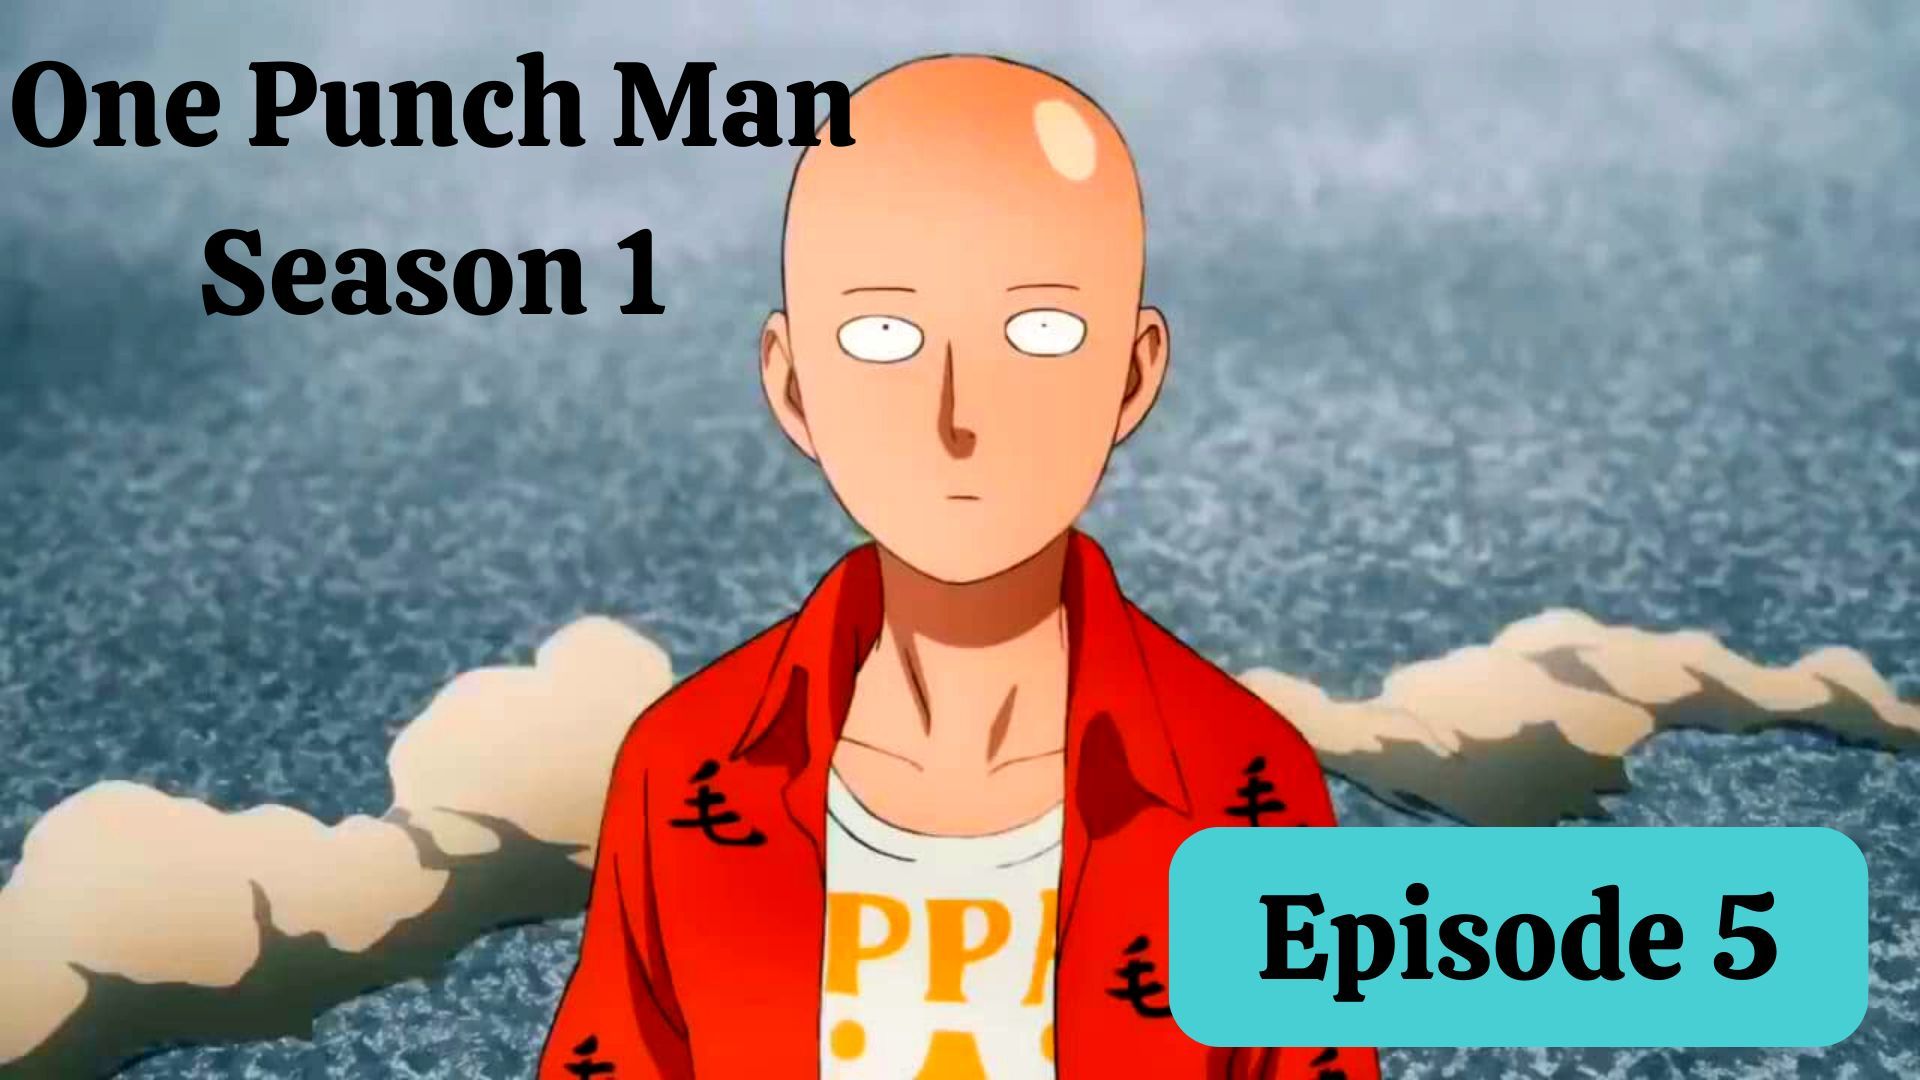 One Punch Man (Season 2) - Episode 18 [English Sub] - BiliBili